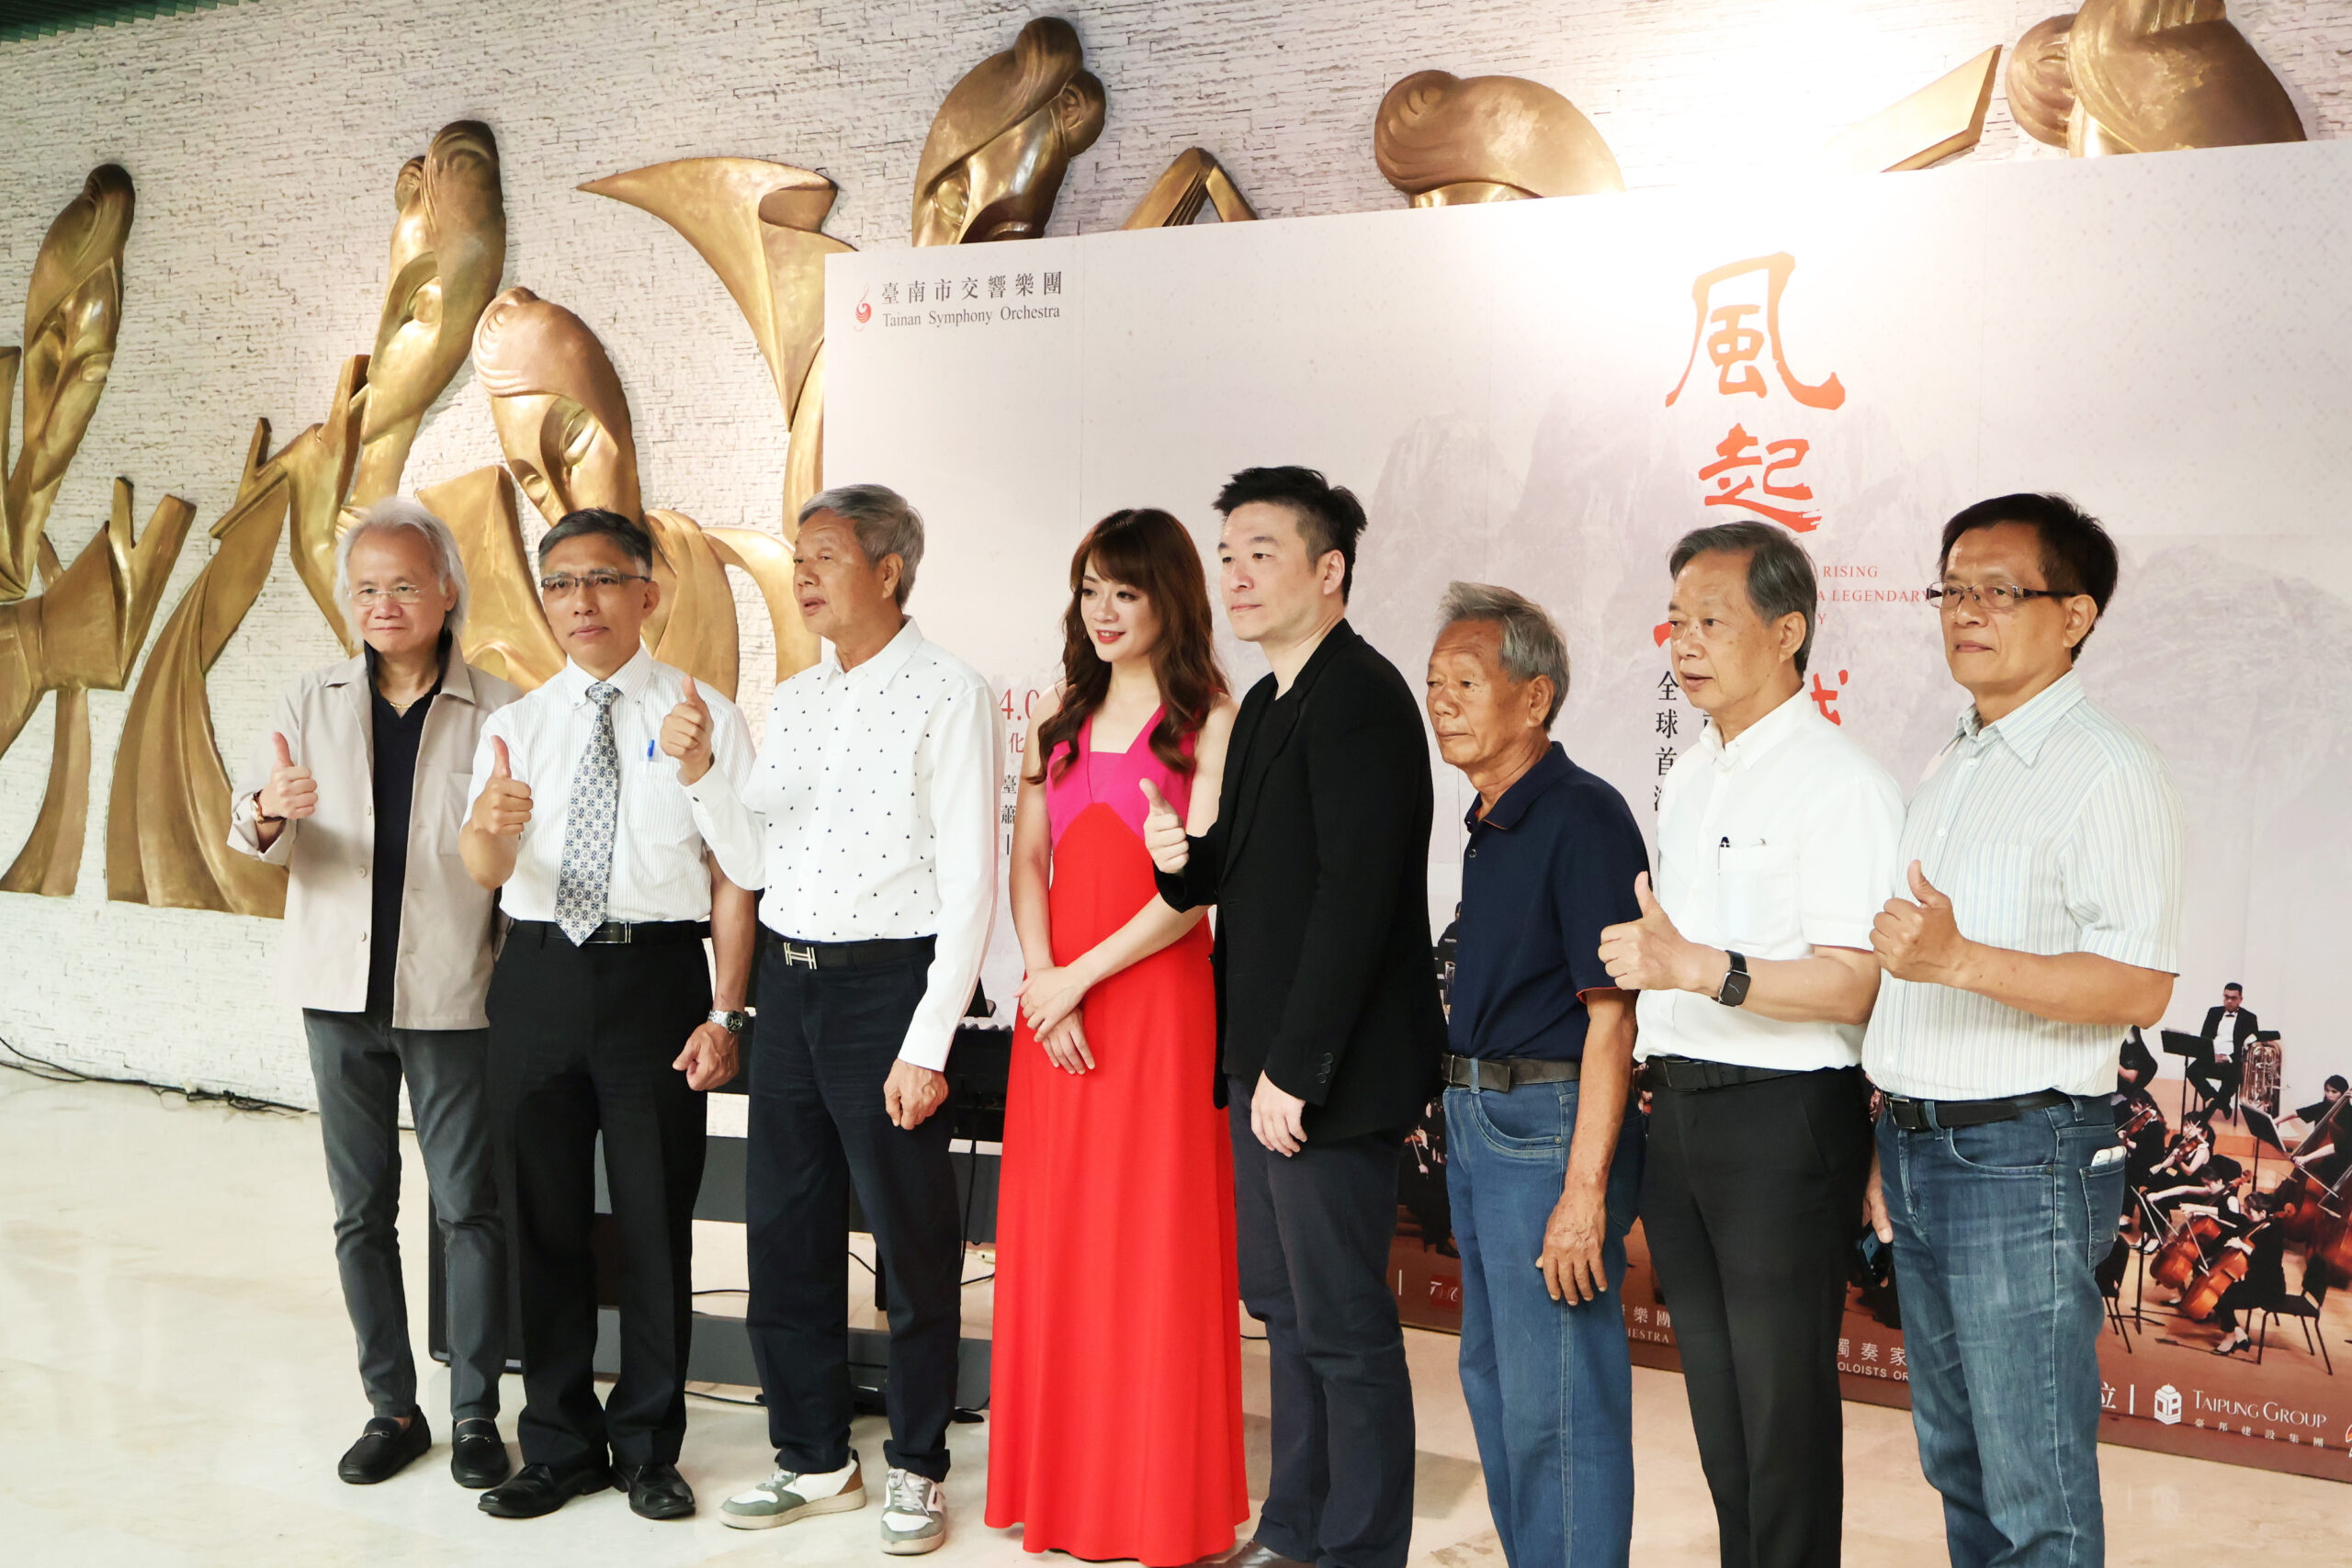 風起王城交響四部曲由旅外知名作曲家石青如及臺南市交響樂團共同演出